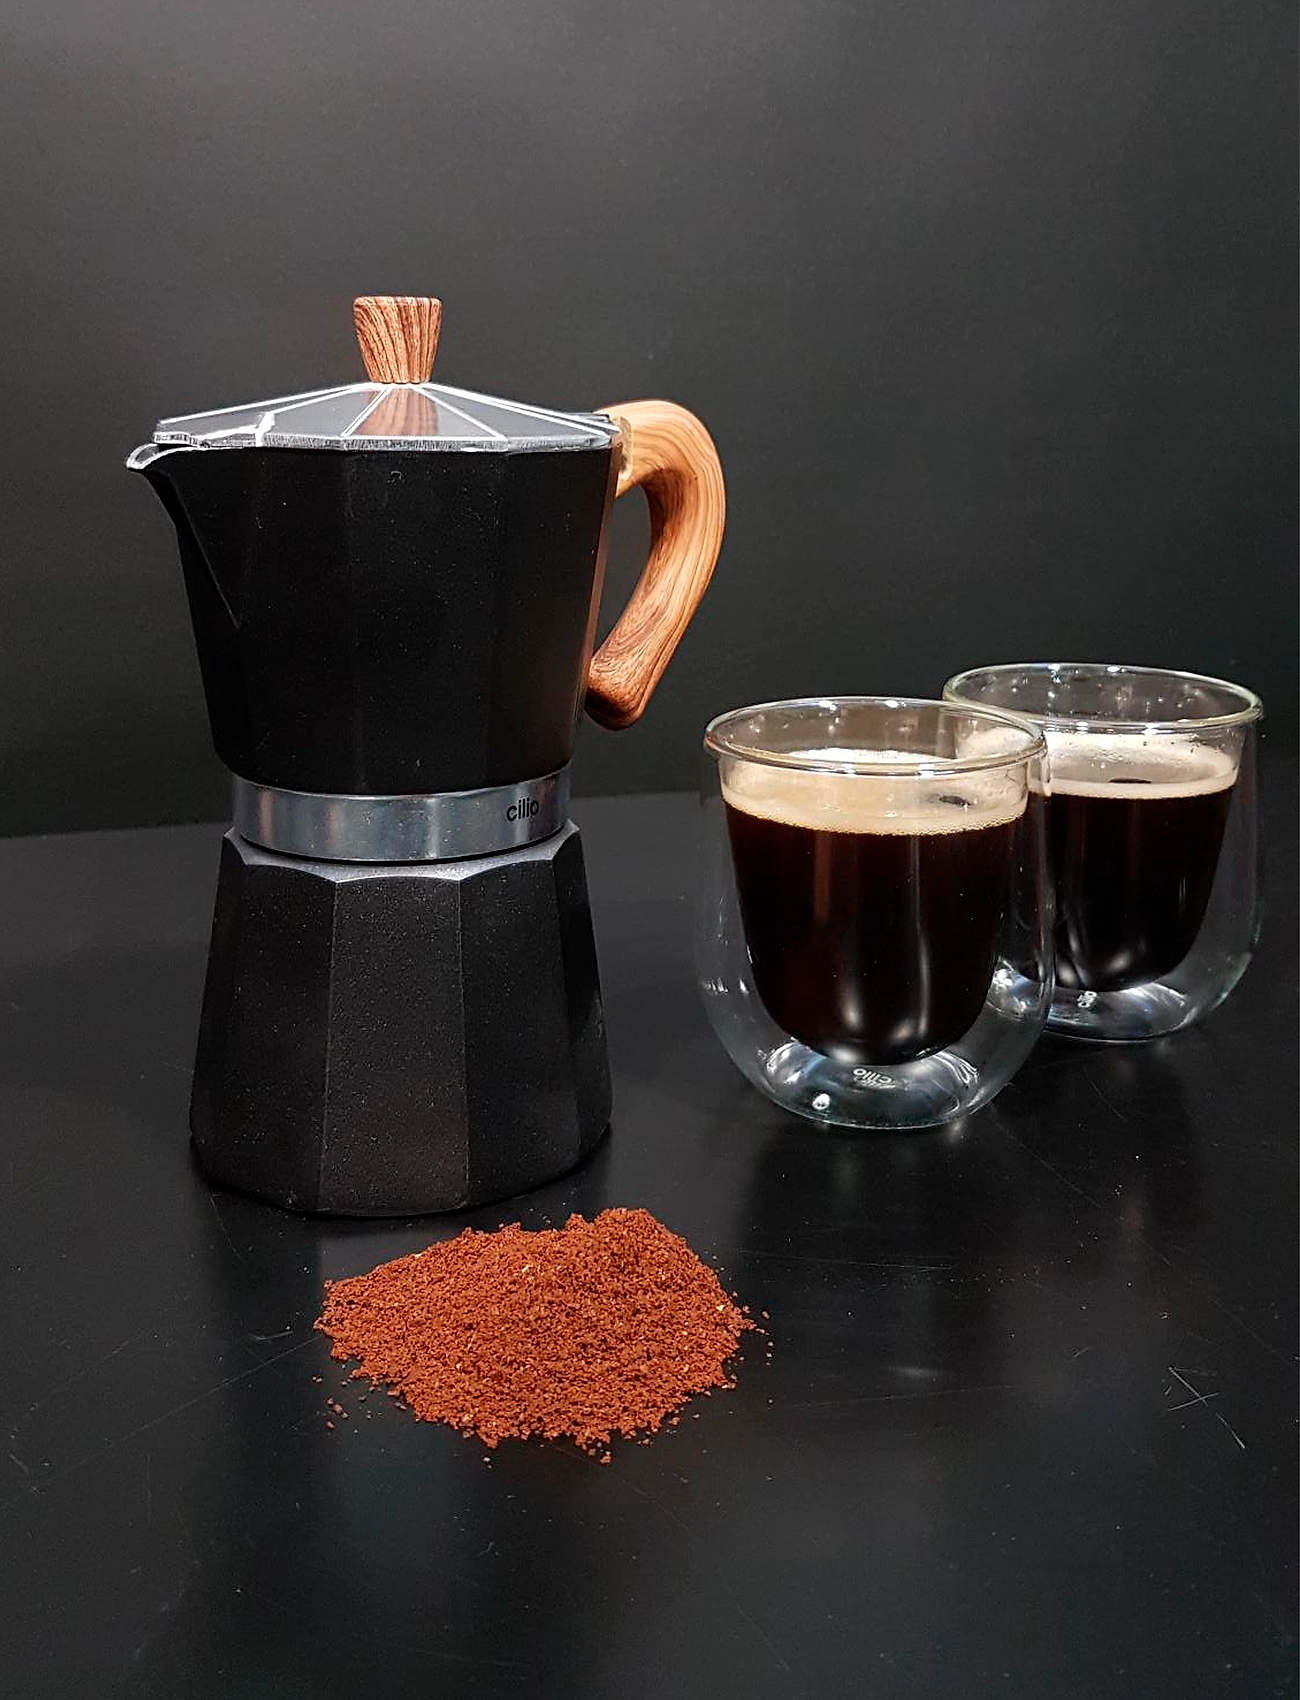 cilio - Espresso maker CLASSICO NATURA 3 cups - makinetka - black - 1